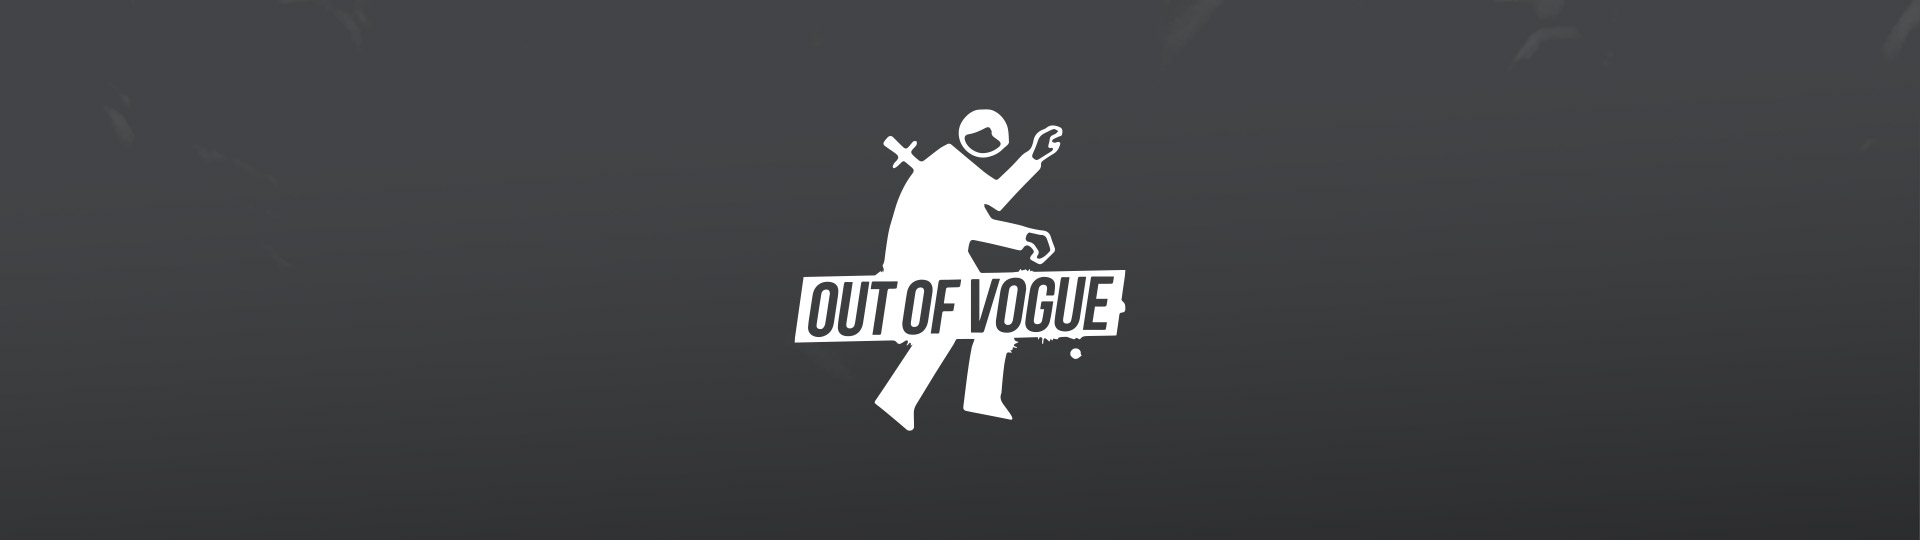 Out Of Vogue at OUT OF VOGUE SHOP / DE